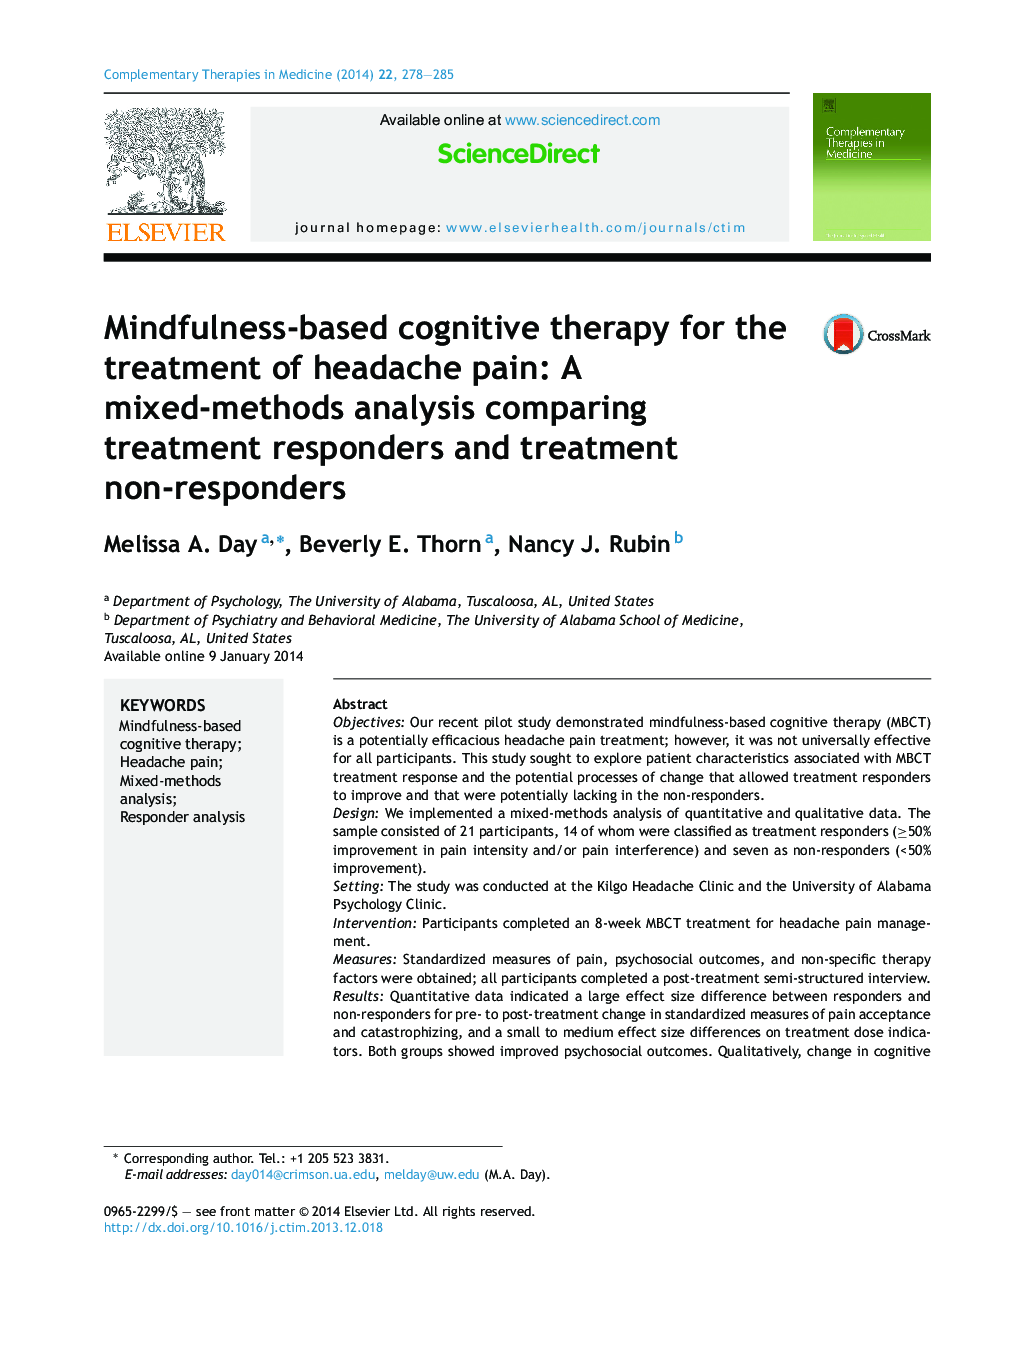 درمان شناختی مبتنی بر ذهنیت برای درمان درد سردرد: تجزیه و تحلیل آمیزهای متفاوتی در مقایسه با درمان پاسخ دهنده و درمان غیر پاسخ دهنده 